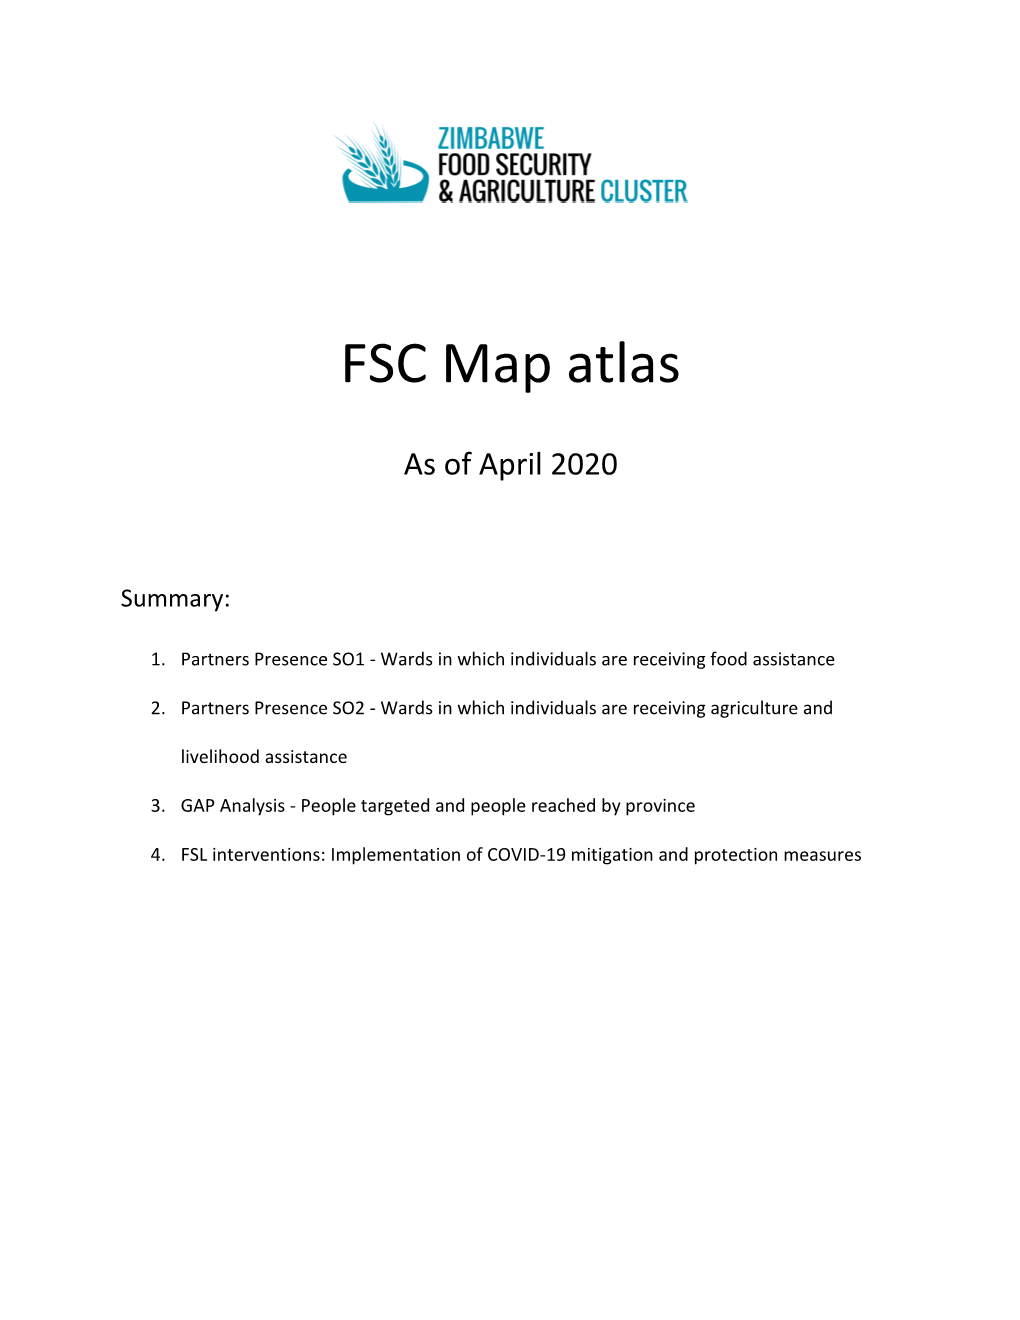 FSC Map Atlas